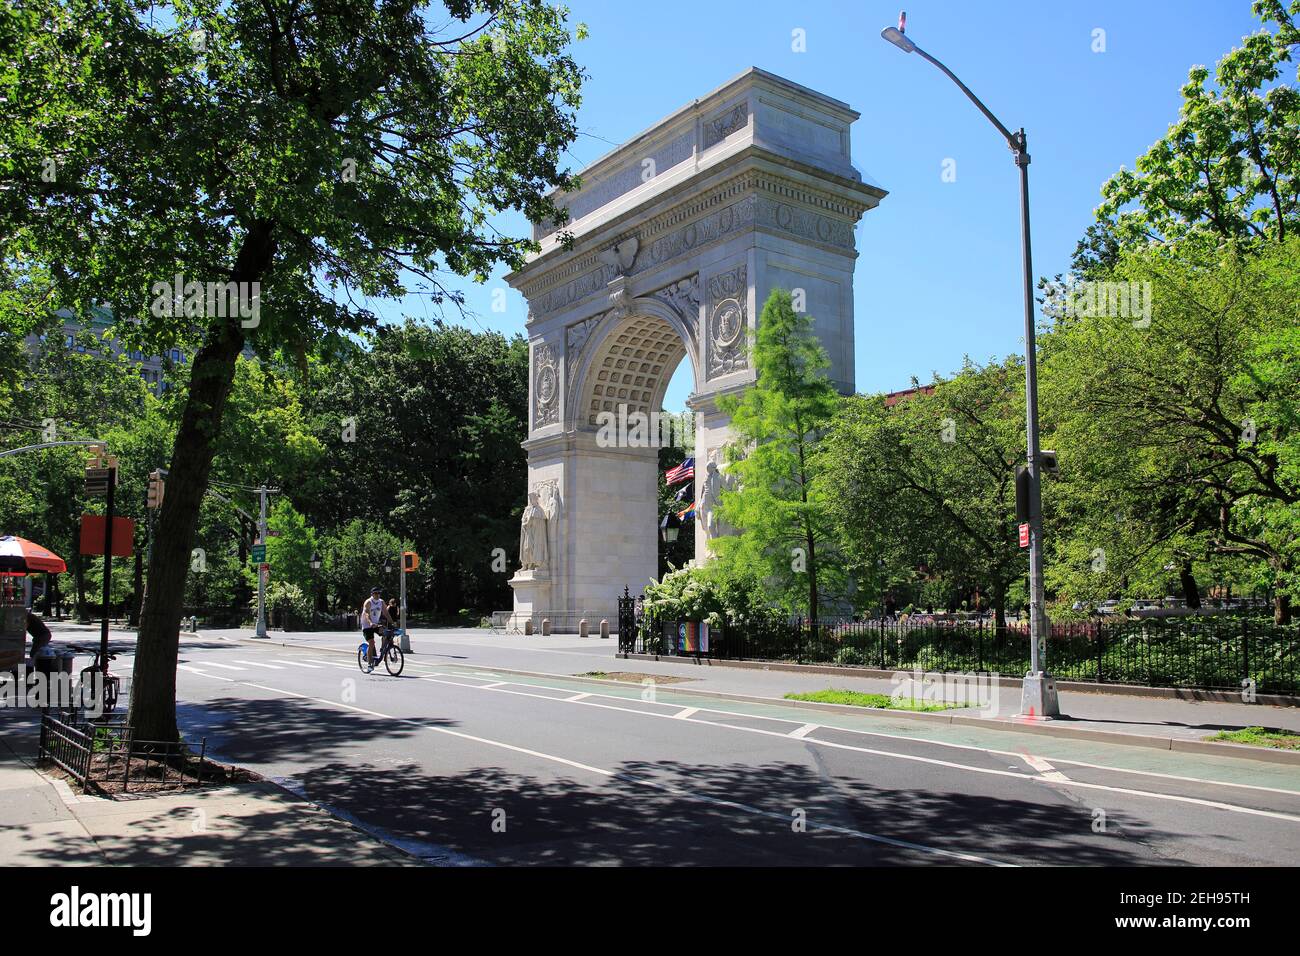 Washington Square Arch, Washington Square Park, Greenwich Village, Manhattan, New York City, ÉTATS-UNIS Banque D'Images